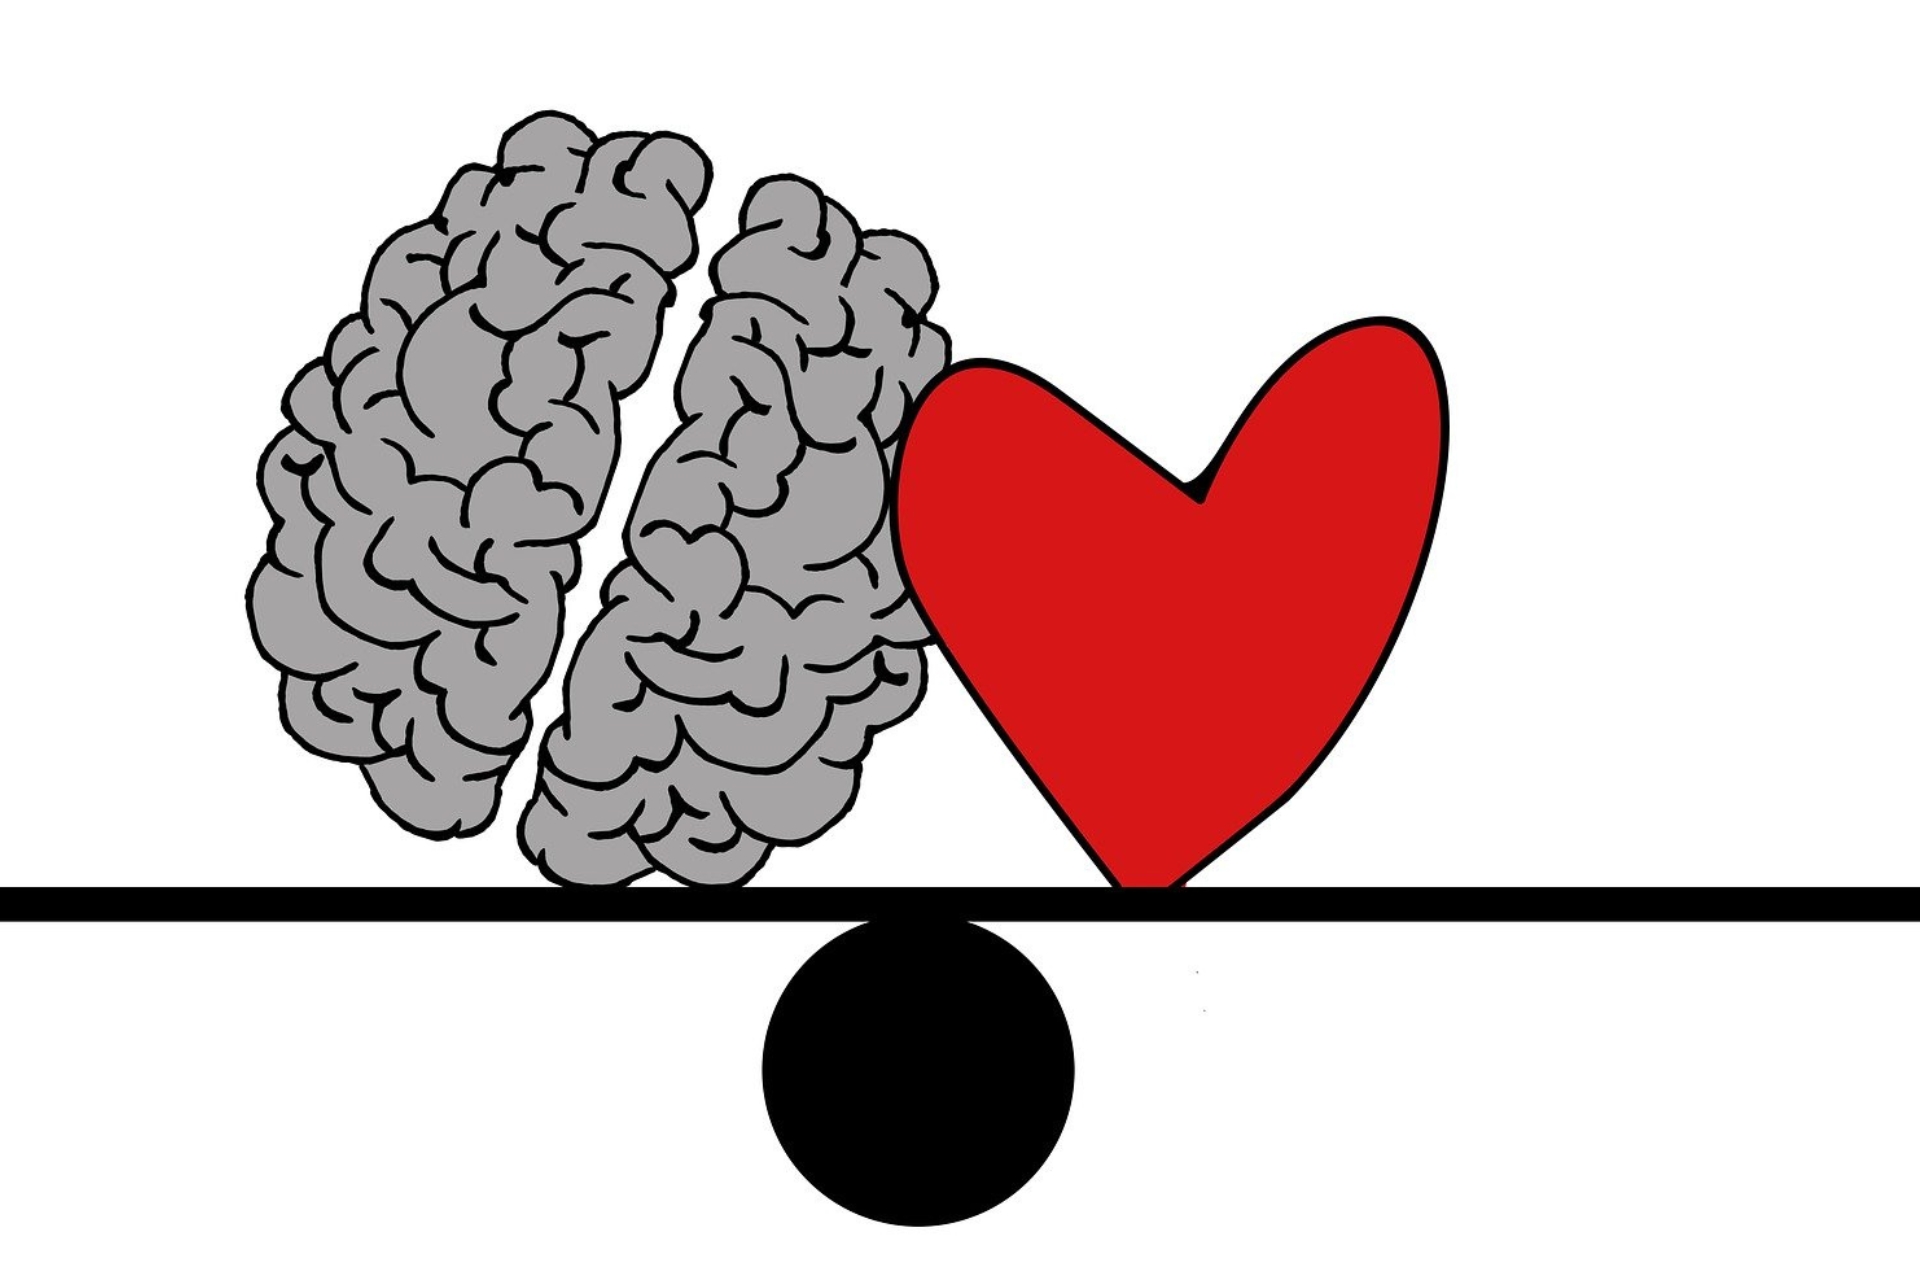 Symbolisk bild där hjärna och hjärta balanserar tillsammans på en våg.